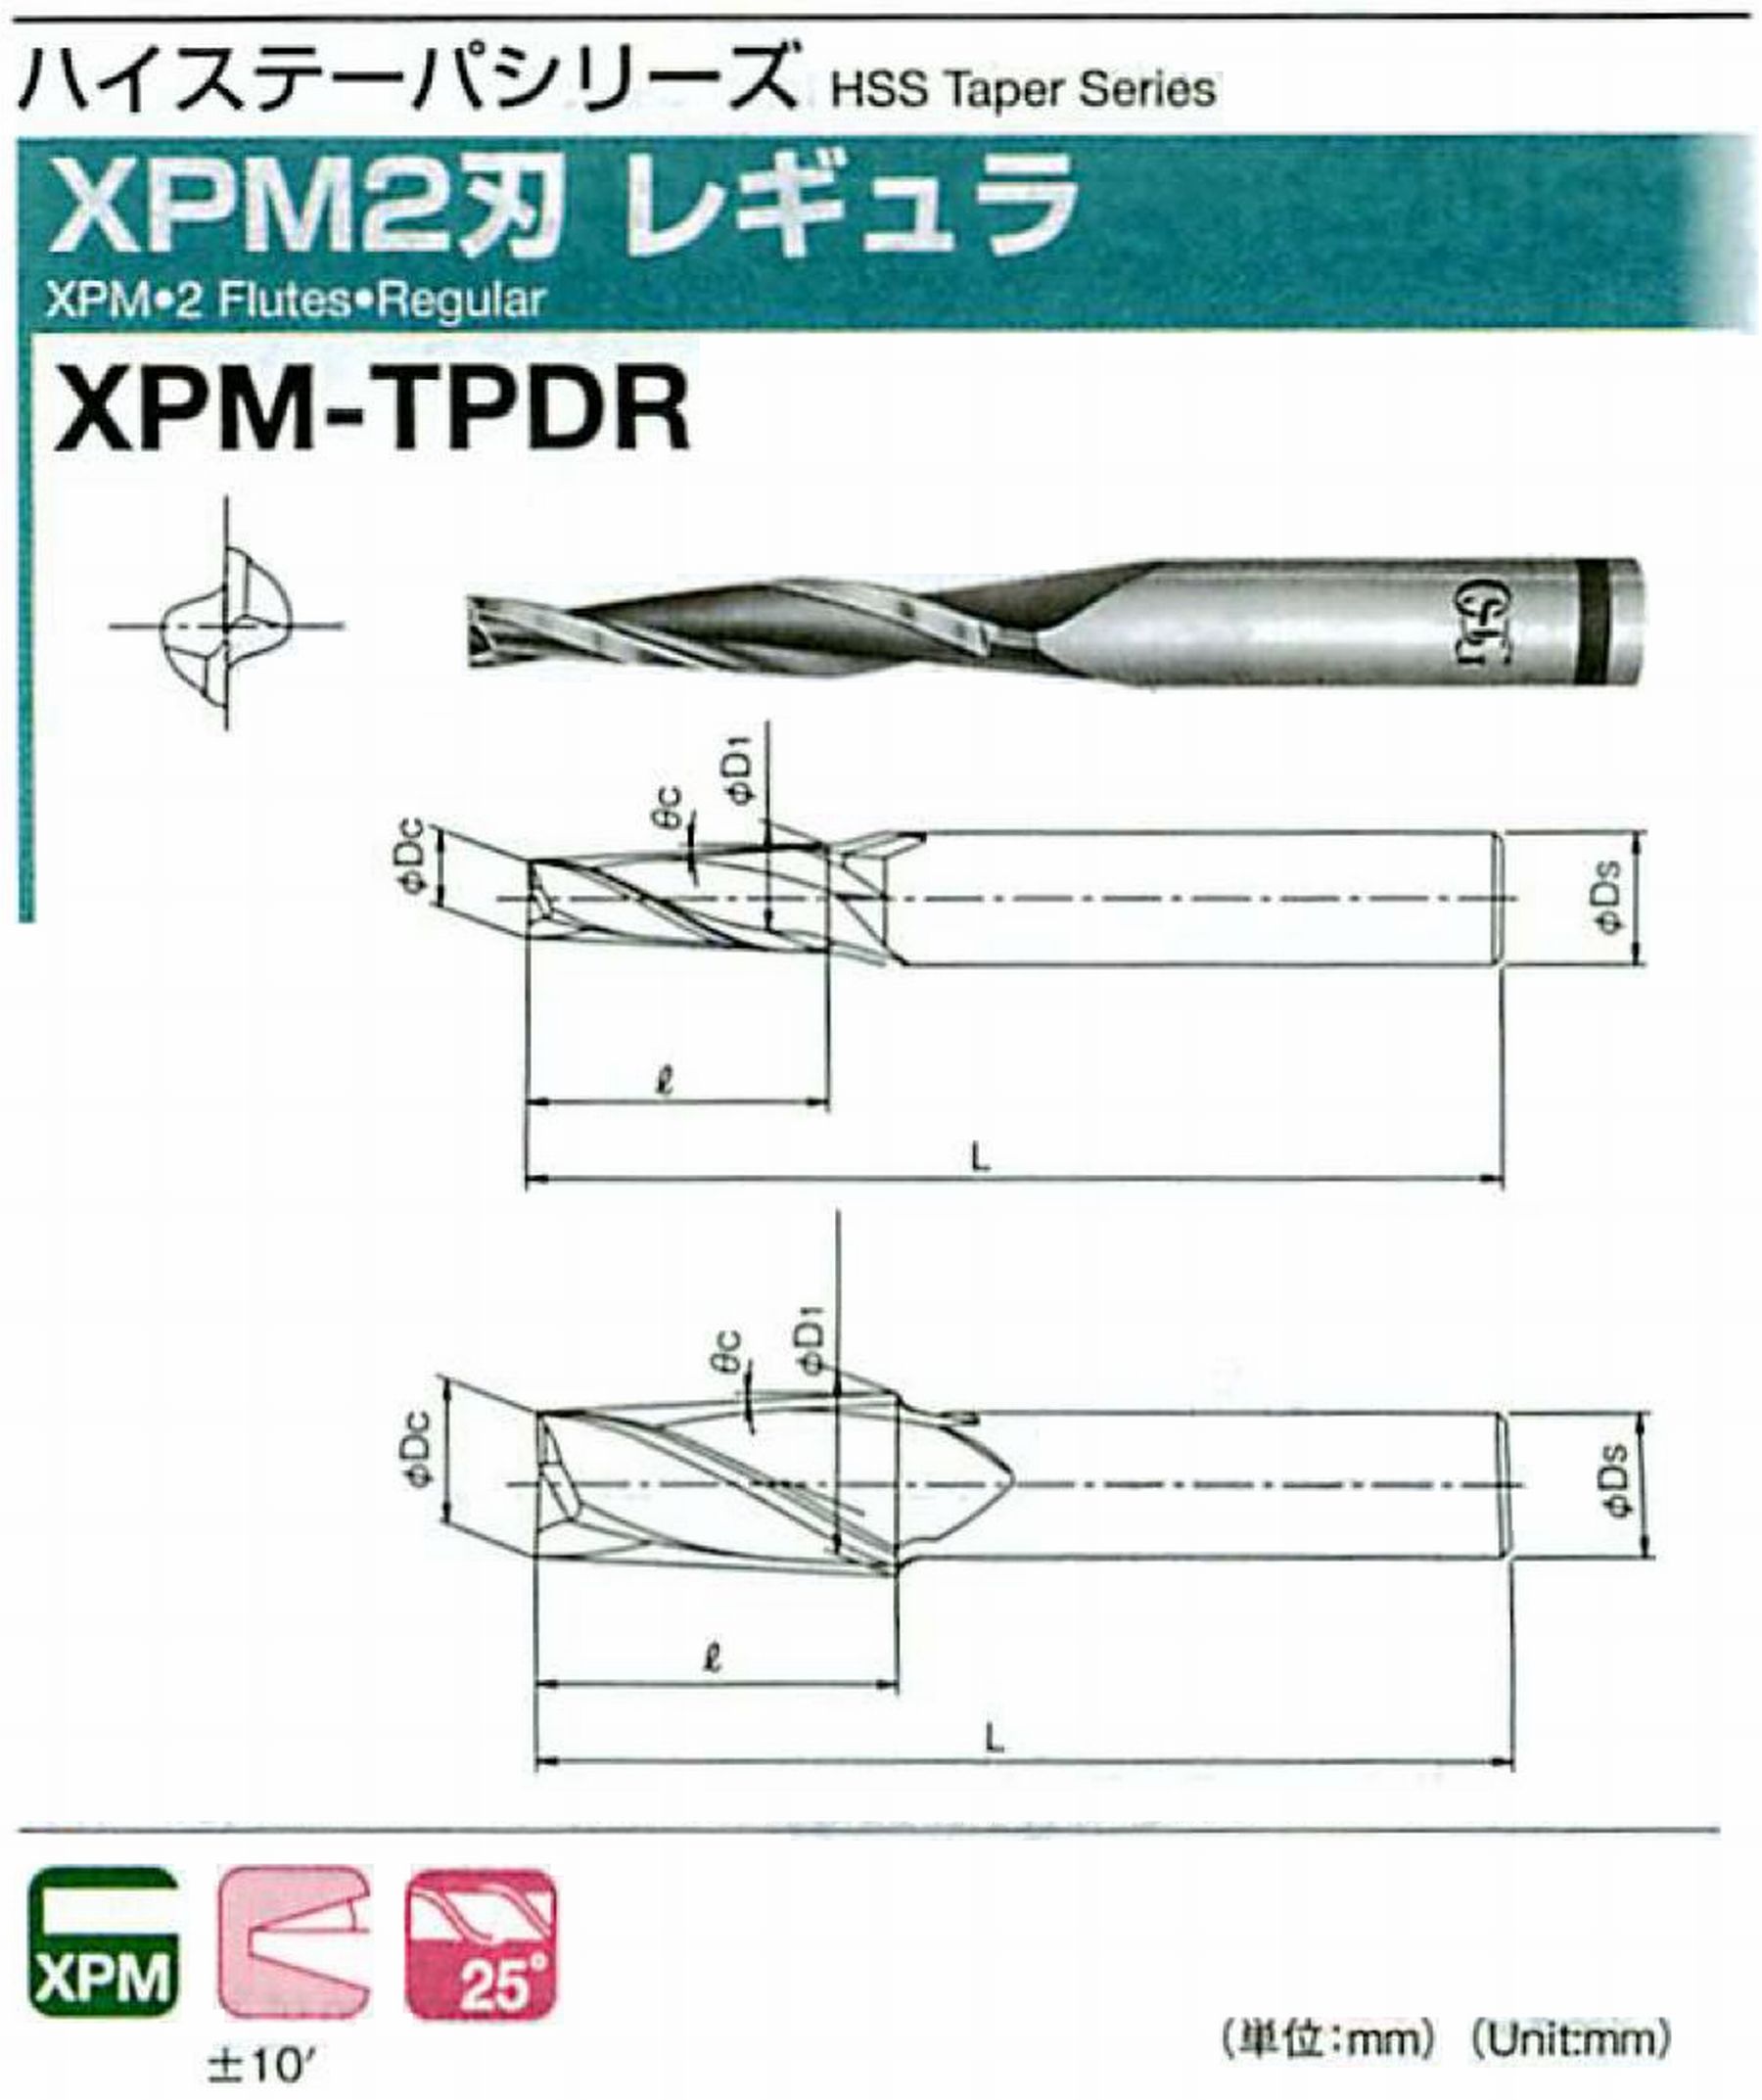 オーエスジー/OSG XPM2刃 レギュラ XPM-TPDR 外径×刃部テーパ半角16×1.5°全長105 刃長45 シャンク径16mm 大端径18.36